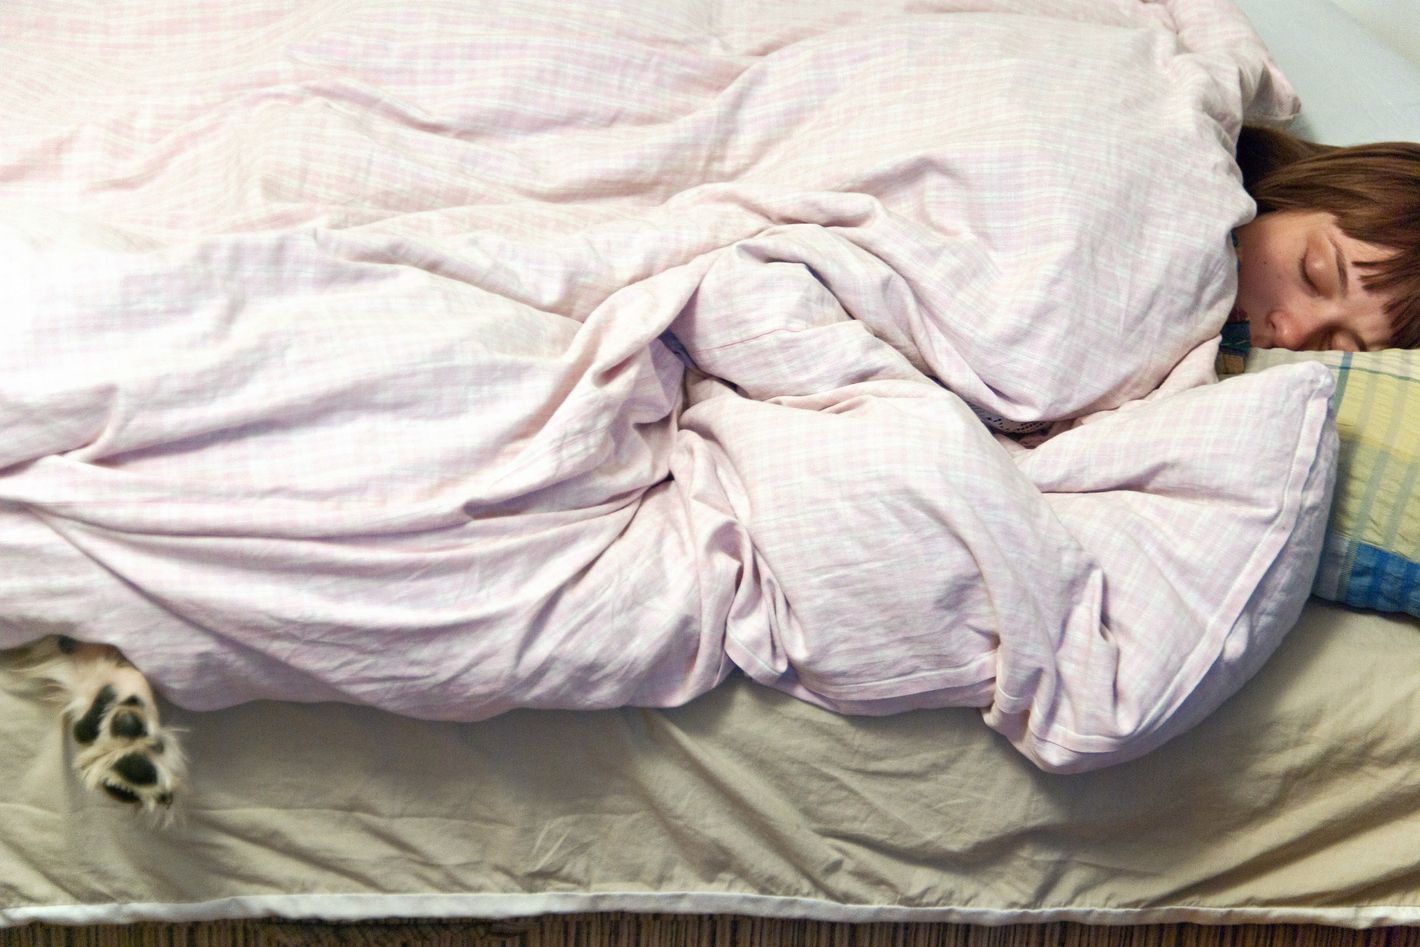 Do Women Really Need 10 Hours of Sleep?